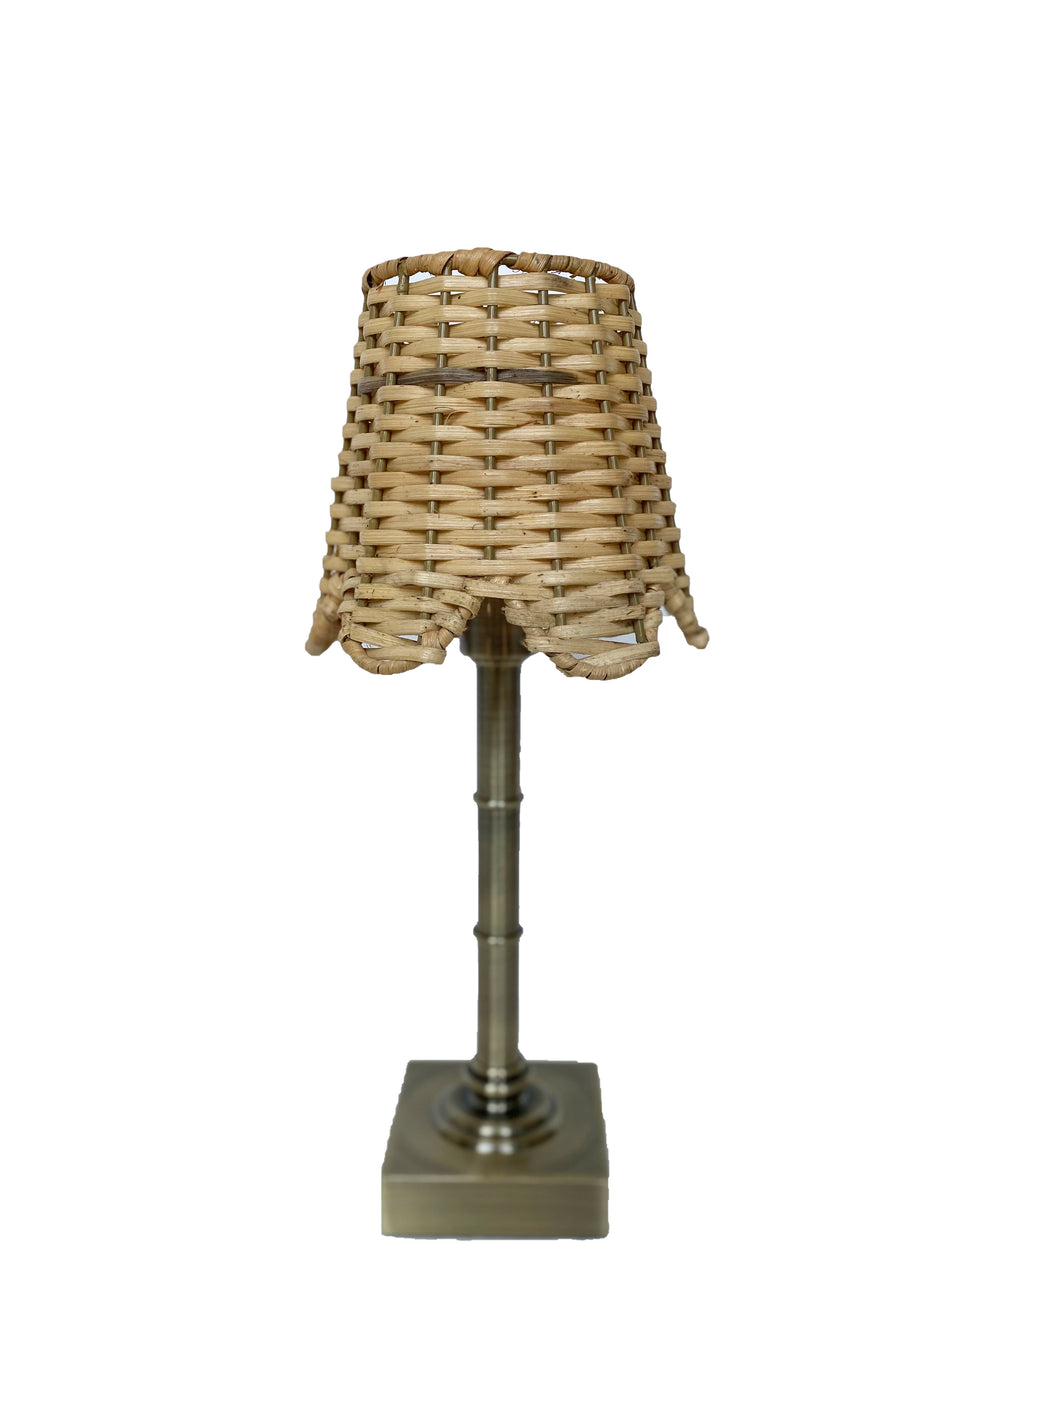 Natural rattan lamp shade